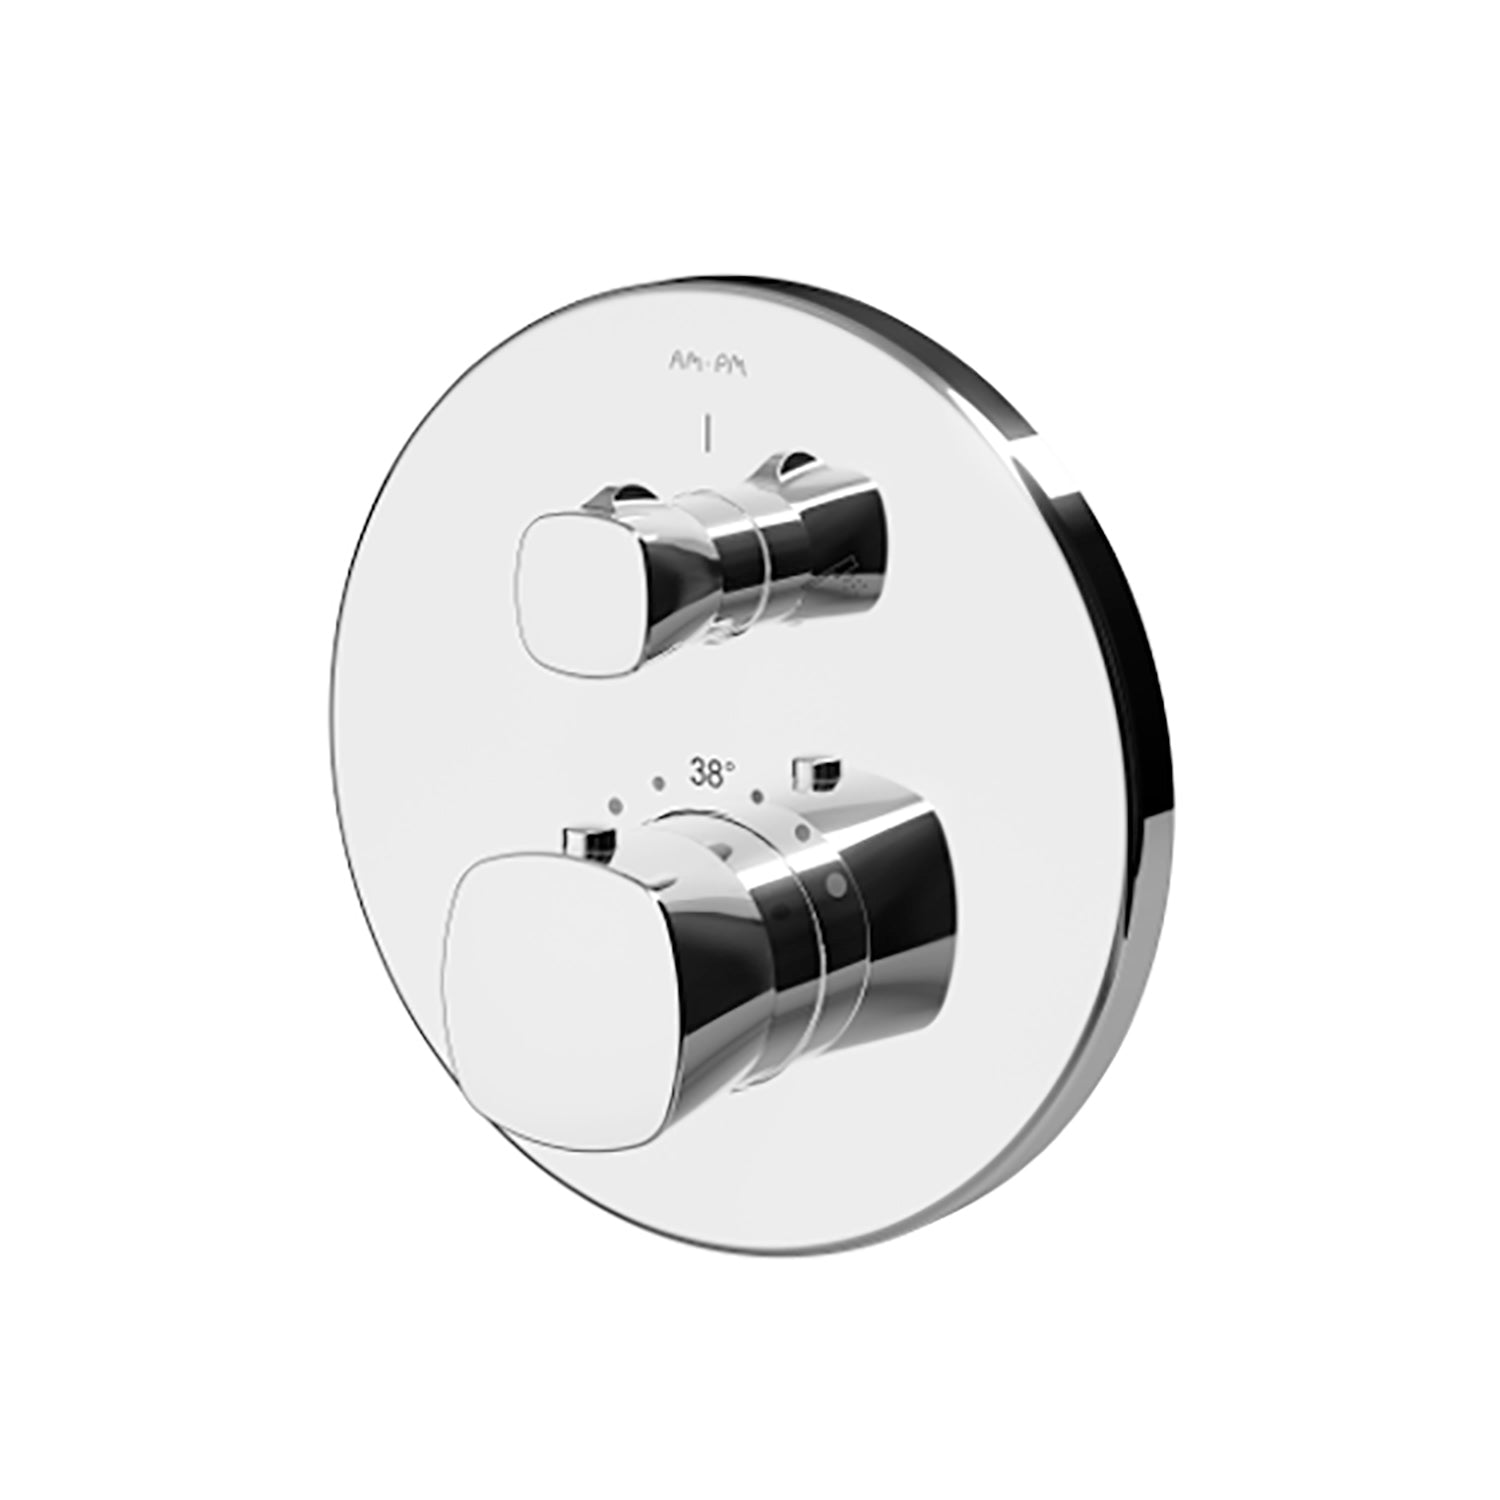 F71A855W0 Spirit V2.1 Unterputz Thermostat Wannen- Brausearmatur | Online Store von AM.PM